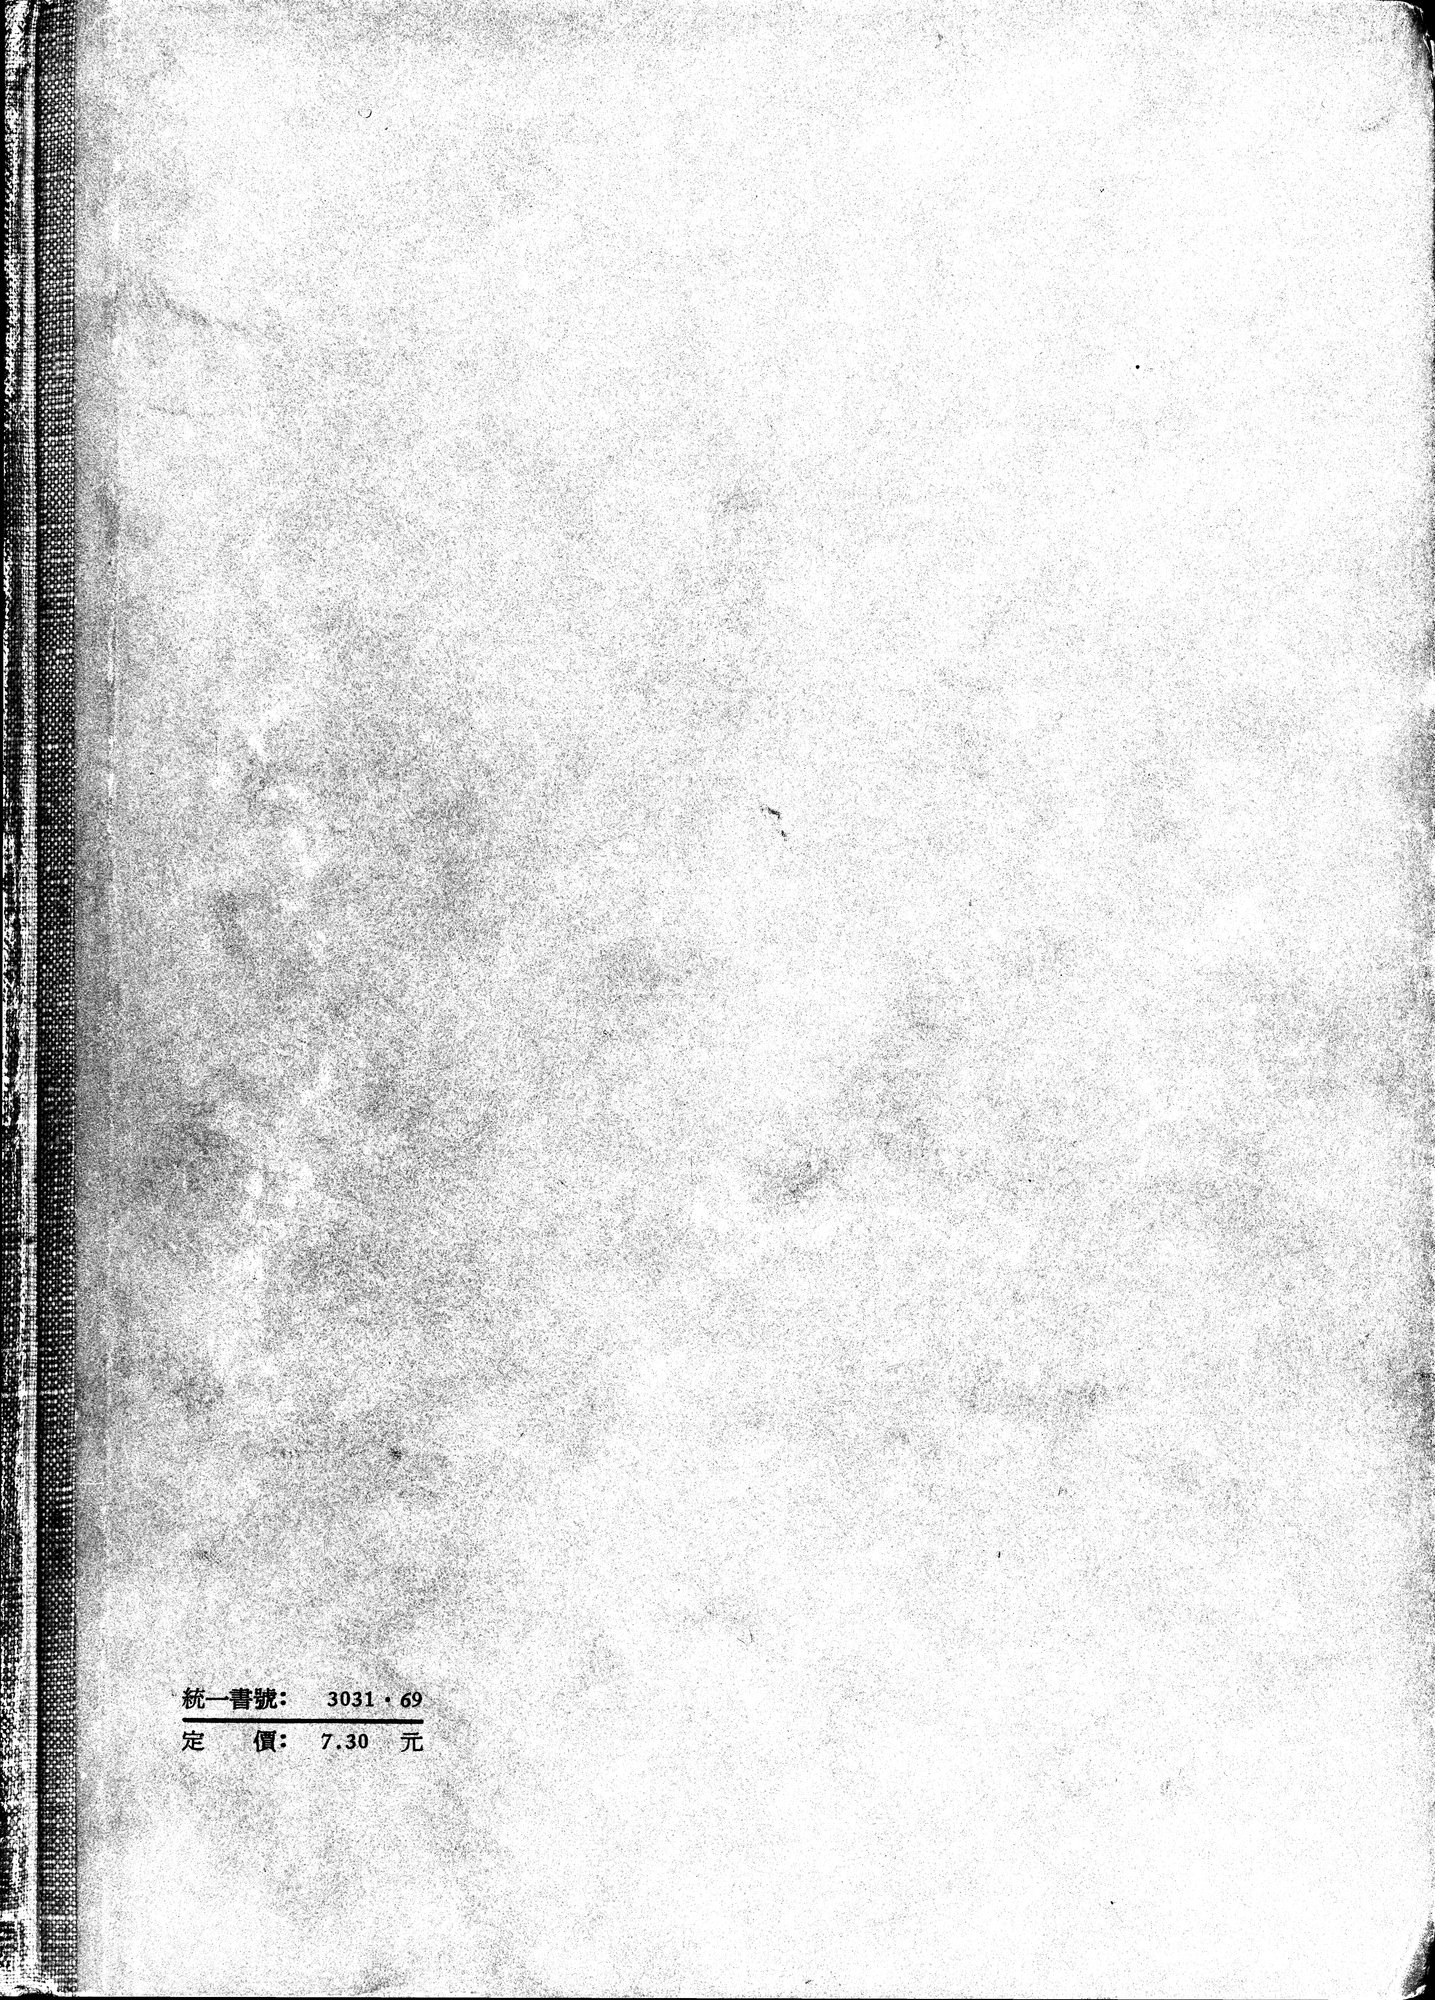 塔里木盆地考古記 : vol.1 / Page 370 (Grayscale High Resolution Image)